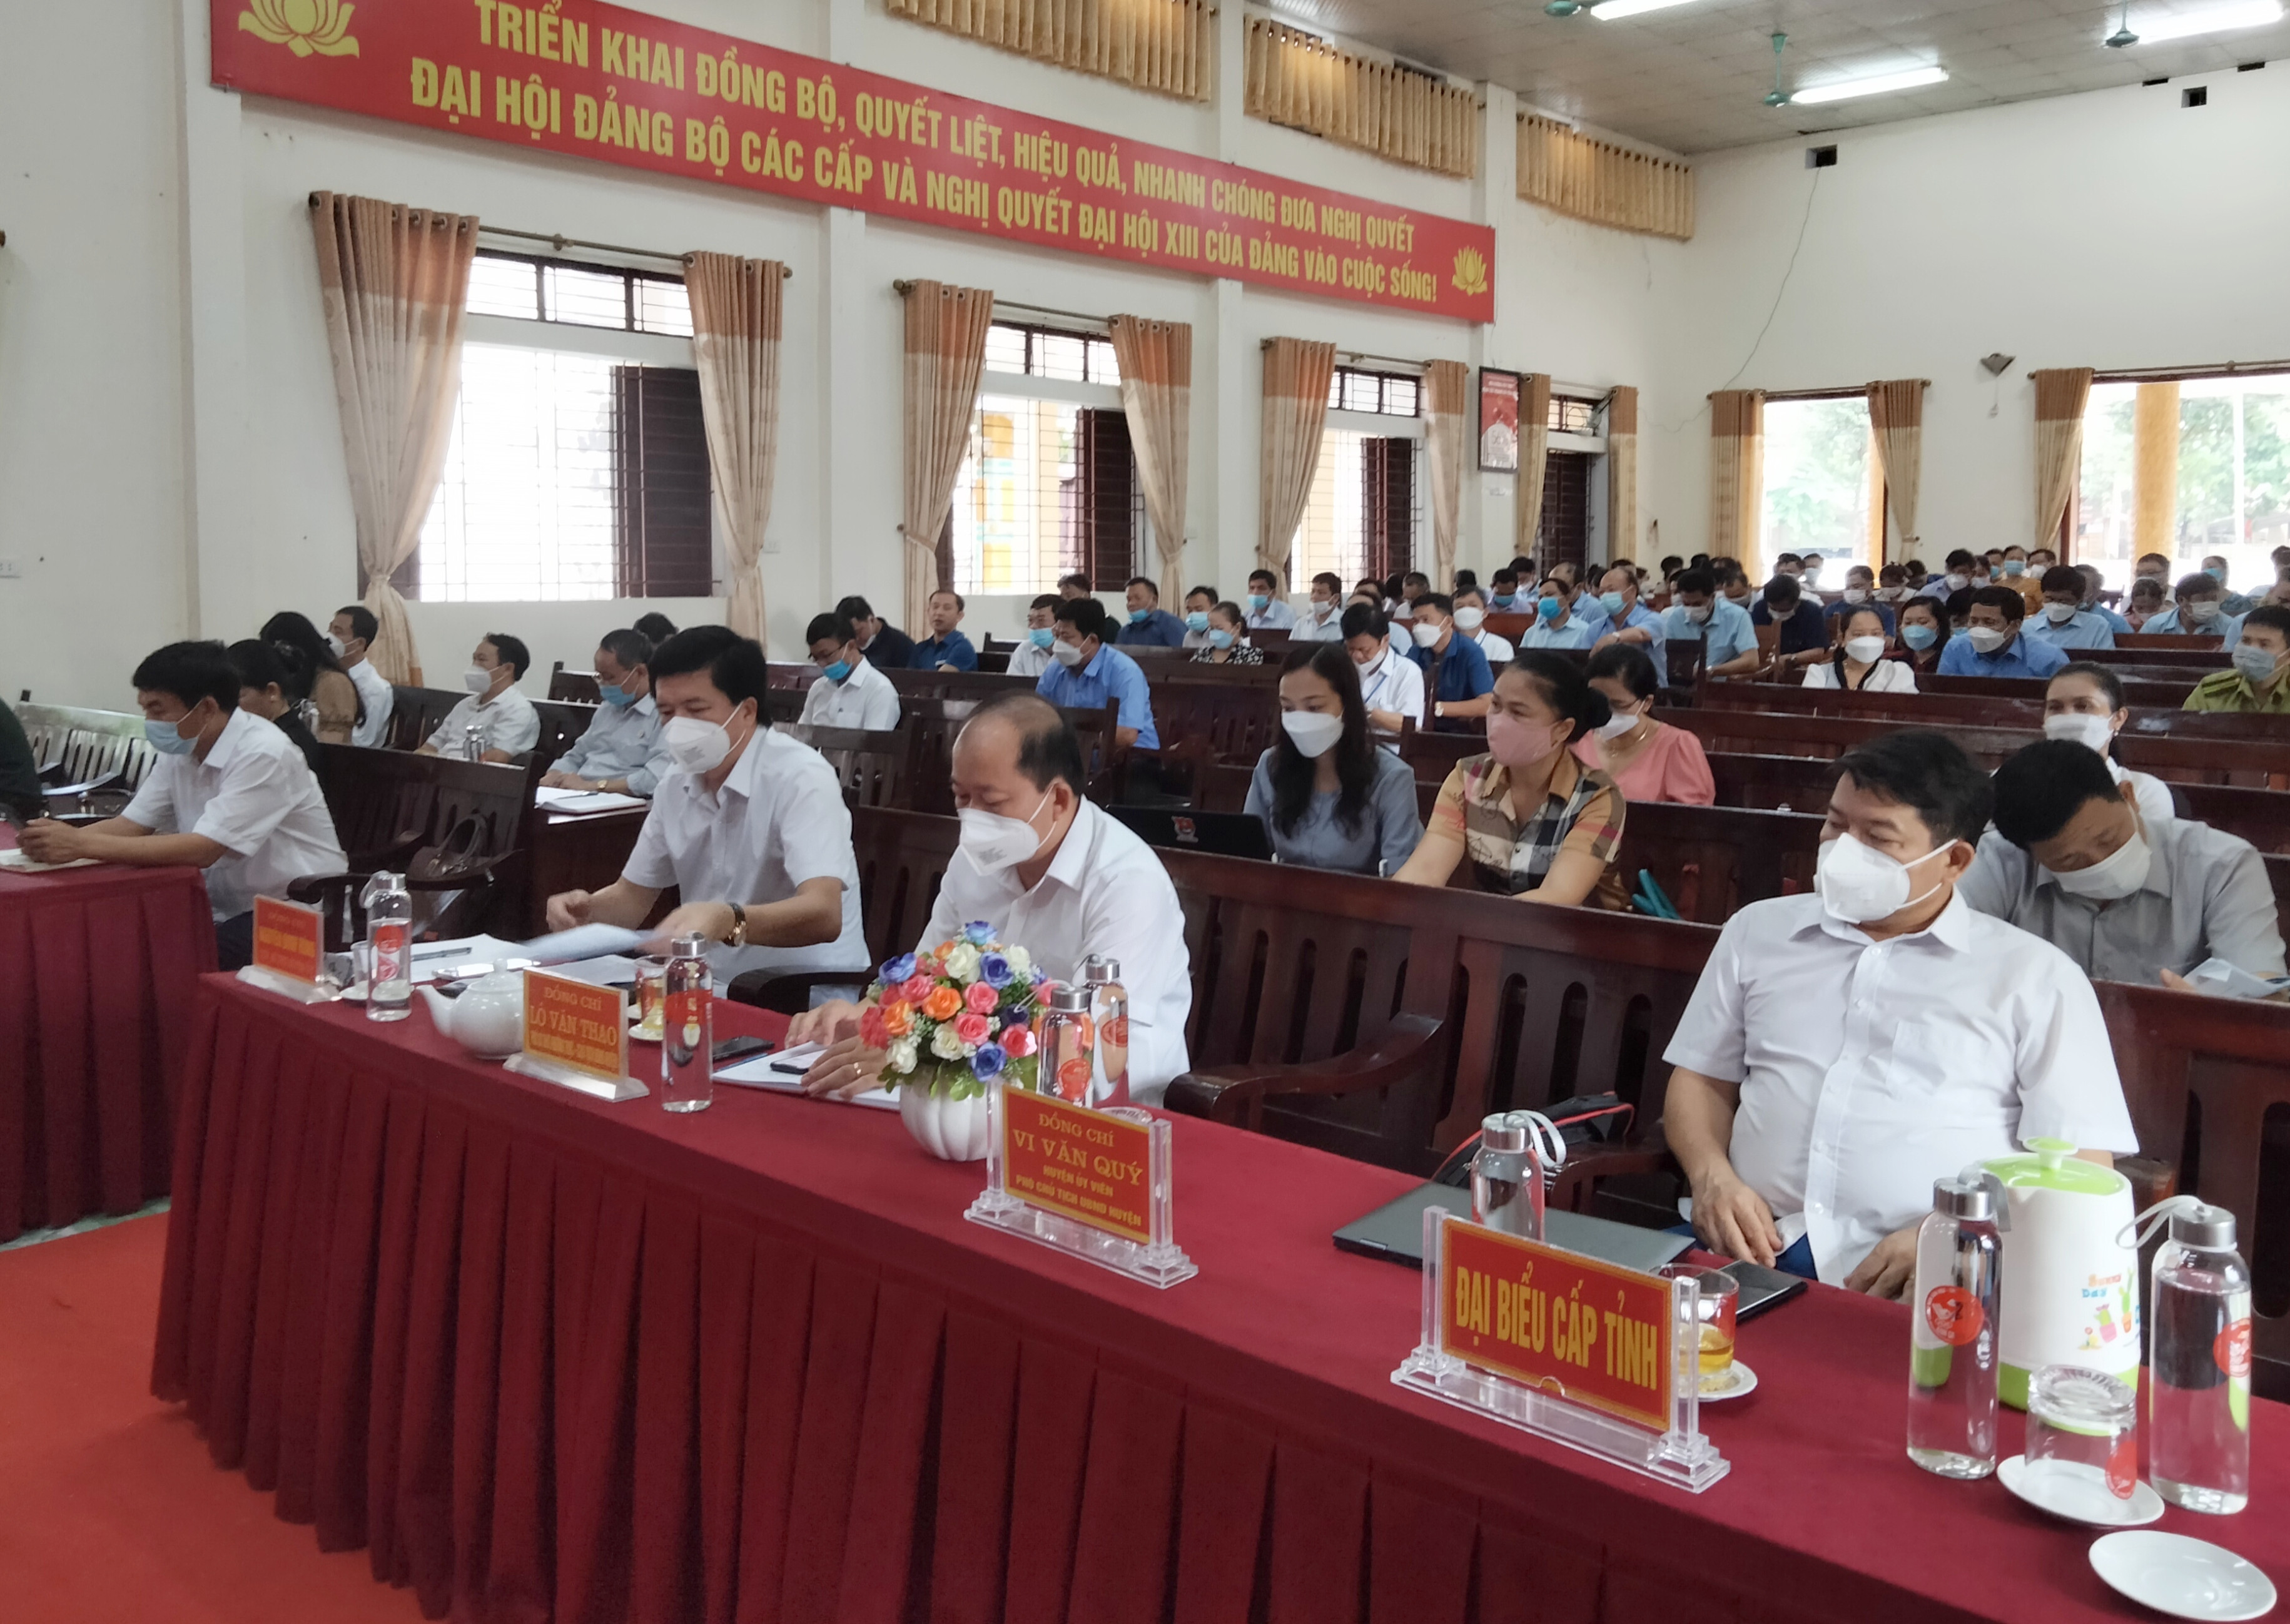 Tham dự hội nghị tiếp xúc cử tri Đại diện văn phòng Đoàn đại biểu Quốc hội và HĐND tỉnh Nghệ An, đại diện các sở ban ngành cấp tỉnh. Ảnh Thu Trang